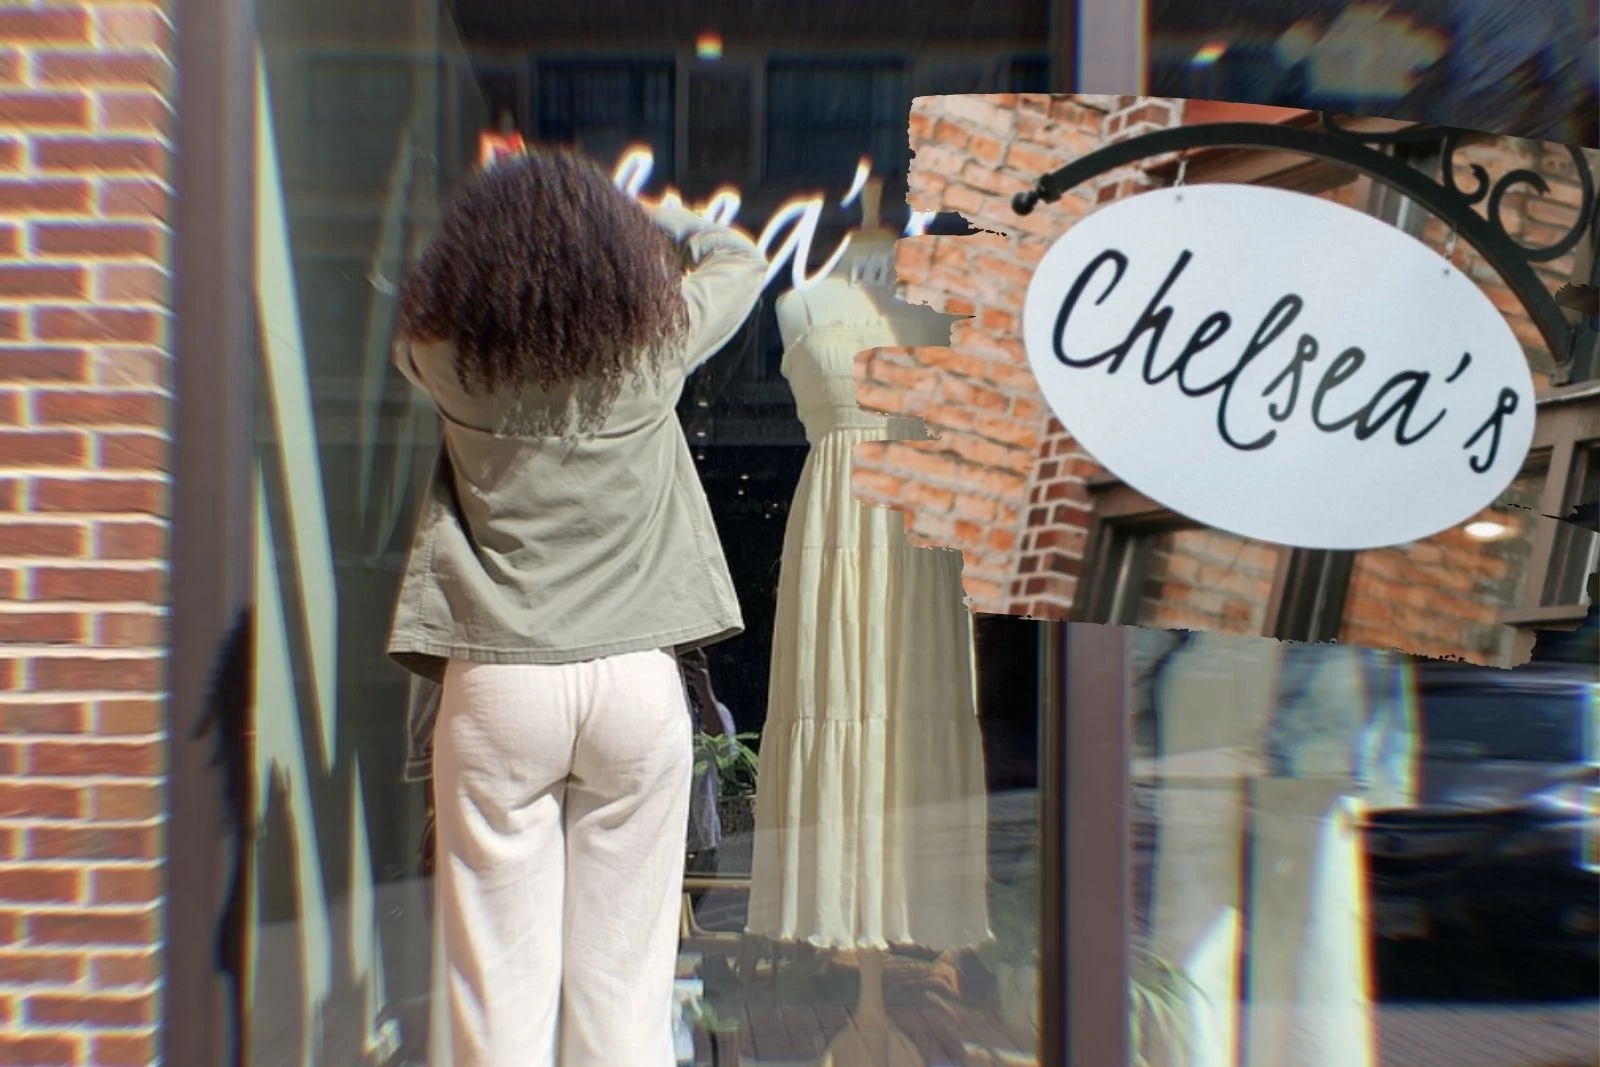 Chelsea's Boutique (via Facebook), @chelseas.boutique (via Instagram), Canva 